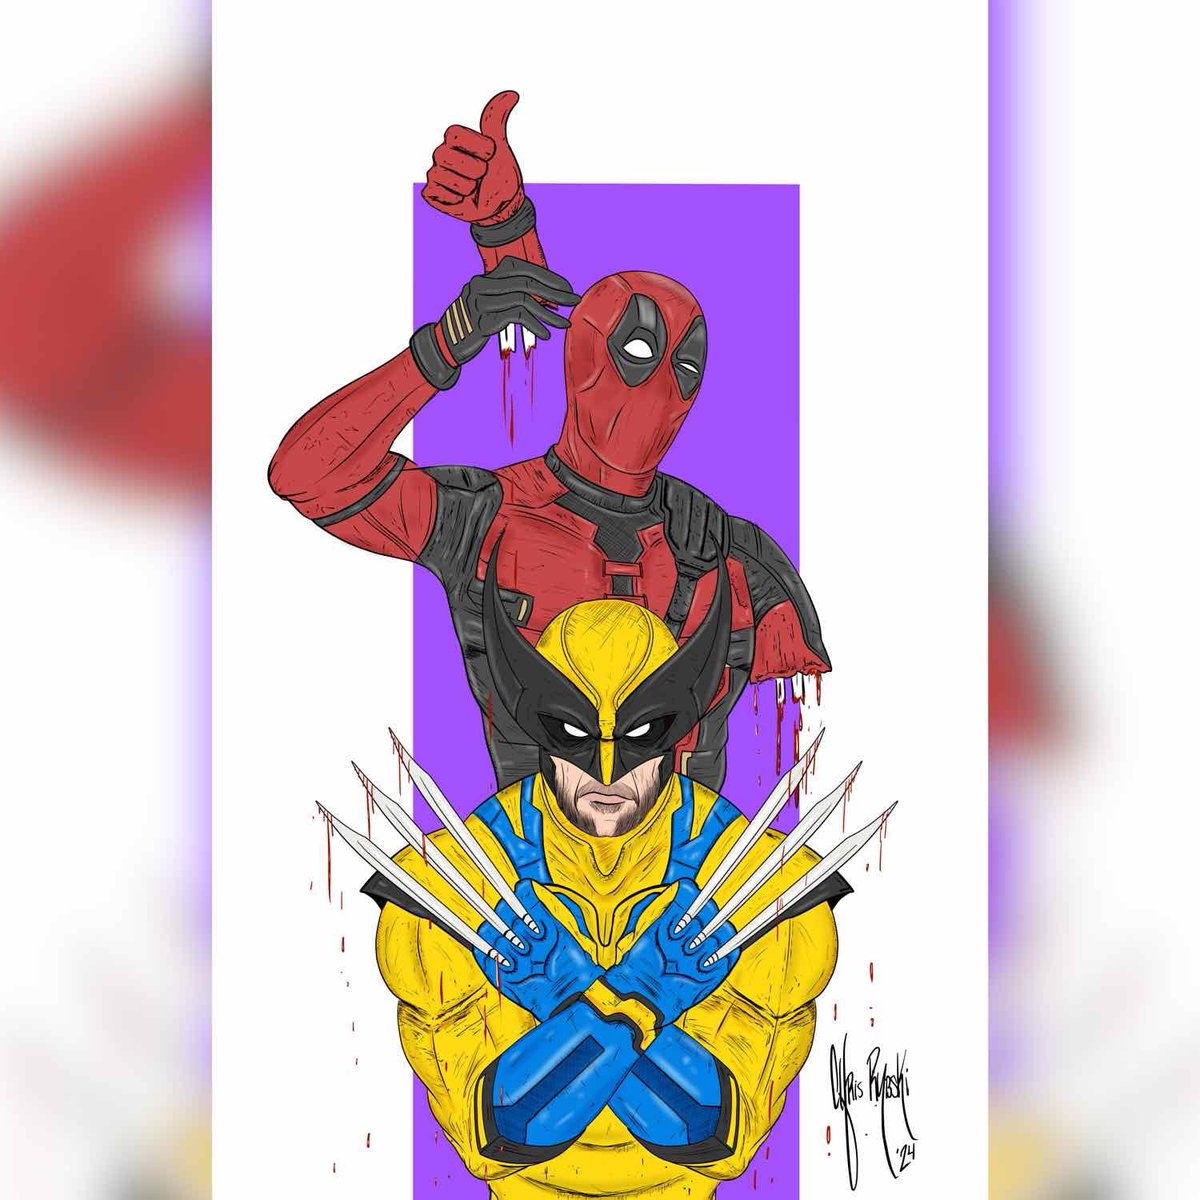 Deadpool and Wolverine

#deadpool #deadpoolfan #deadpool3 #deadpoolmovie #marvel #marvelcomics #ryanreynolds #hughjackman #comic #comics #comicbook #comicbooks #comiccharacter #comiccharacters #comicart #comicbookart #comicpage #comicstyle #illustrate #illustrator